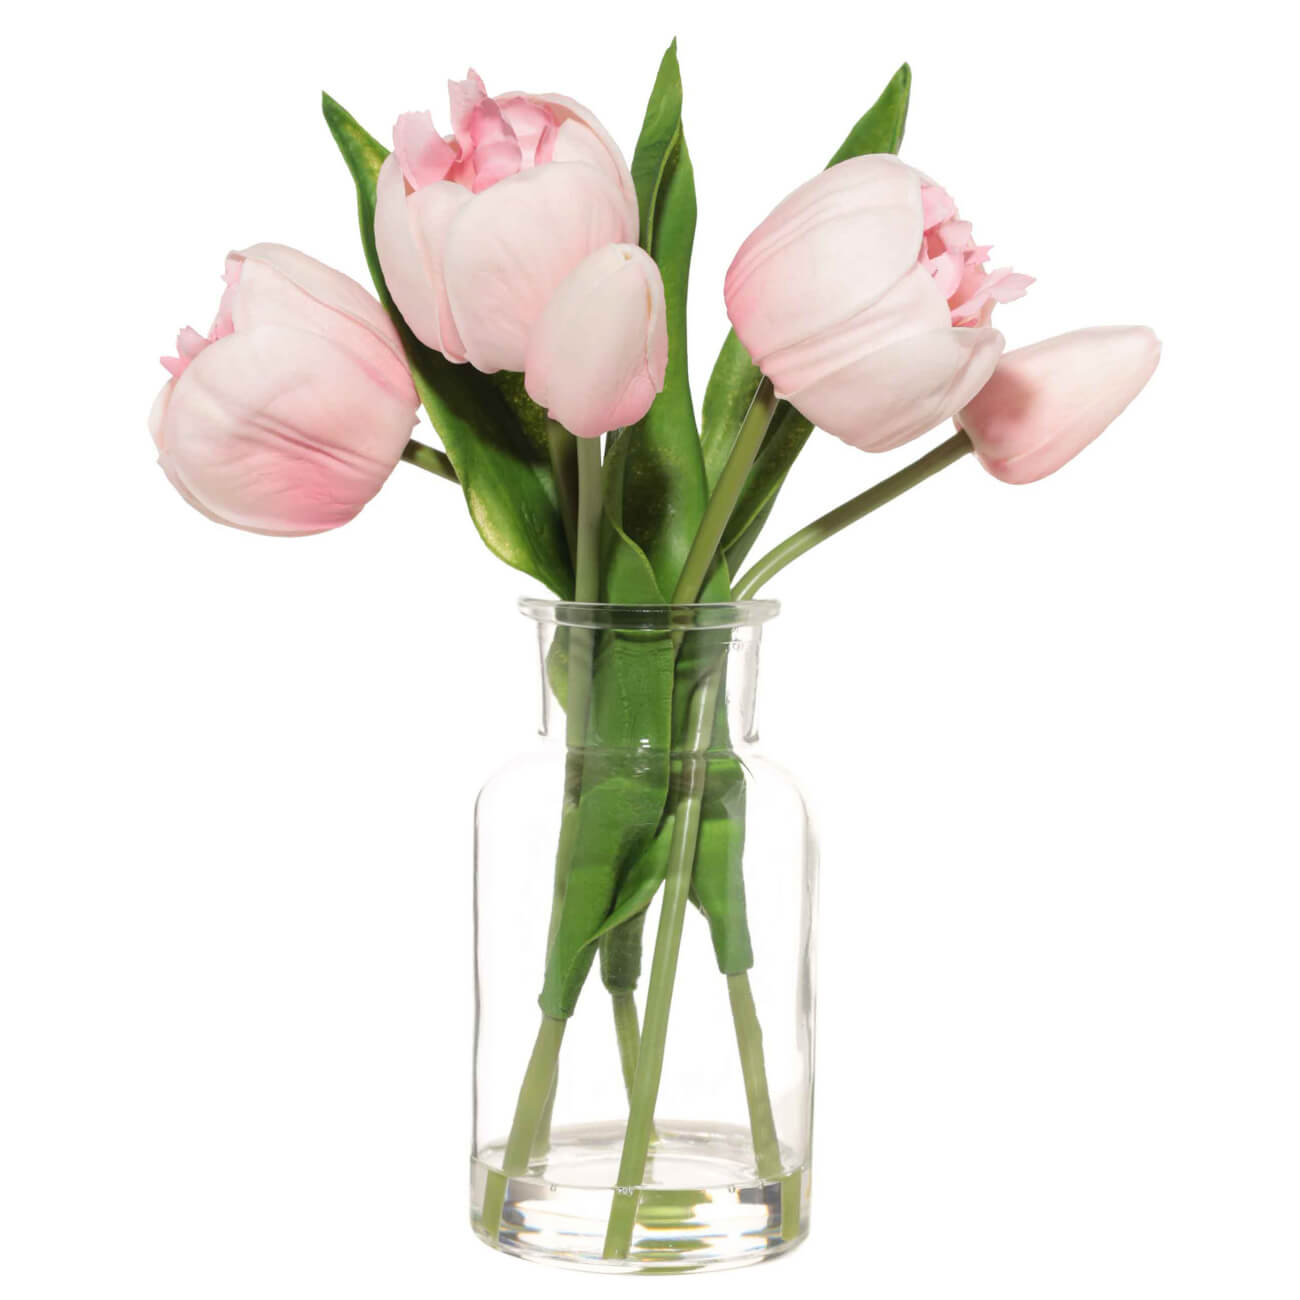 Букет искусственный, 21 см, в вазе, полиуретан/стекло, Розовые тюльпаны, Tulip garden - фото 1